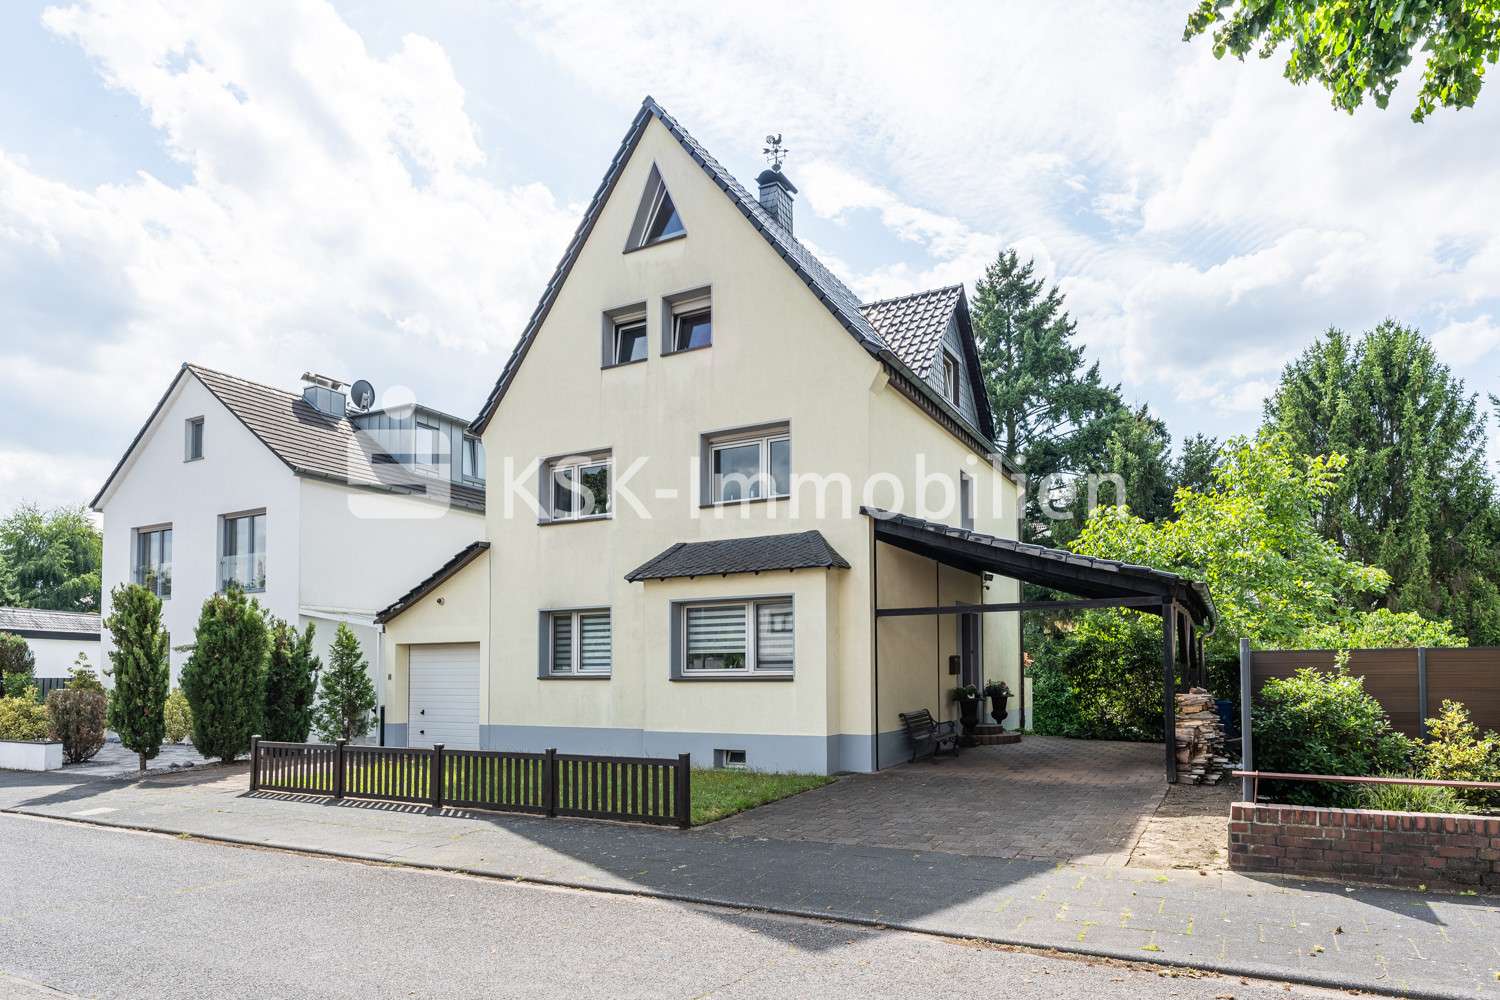 114210 Vorderansicht - Mehrfamilienhaus in 51109 Köln mit 169m² kaufen